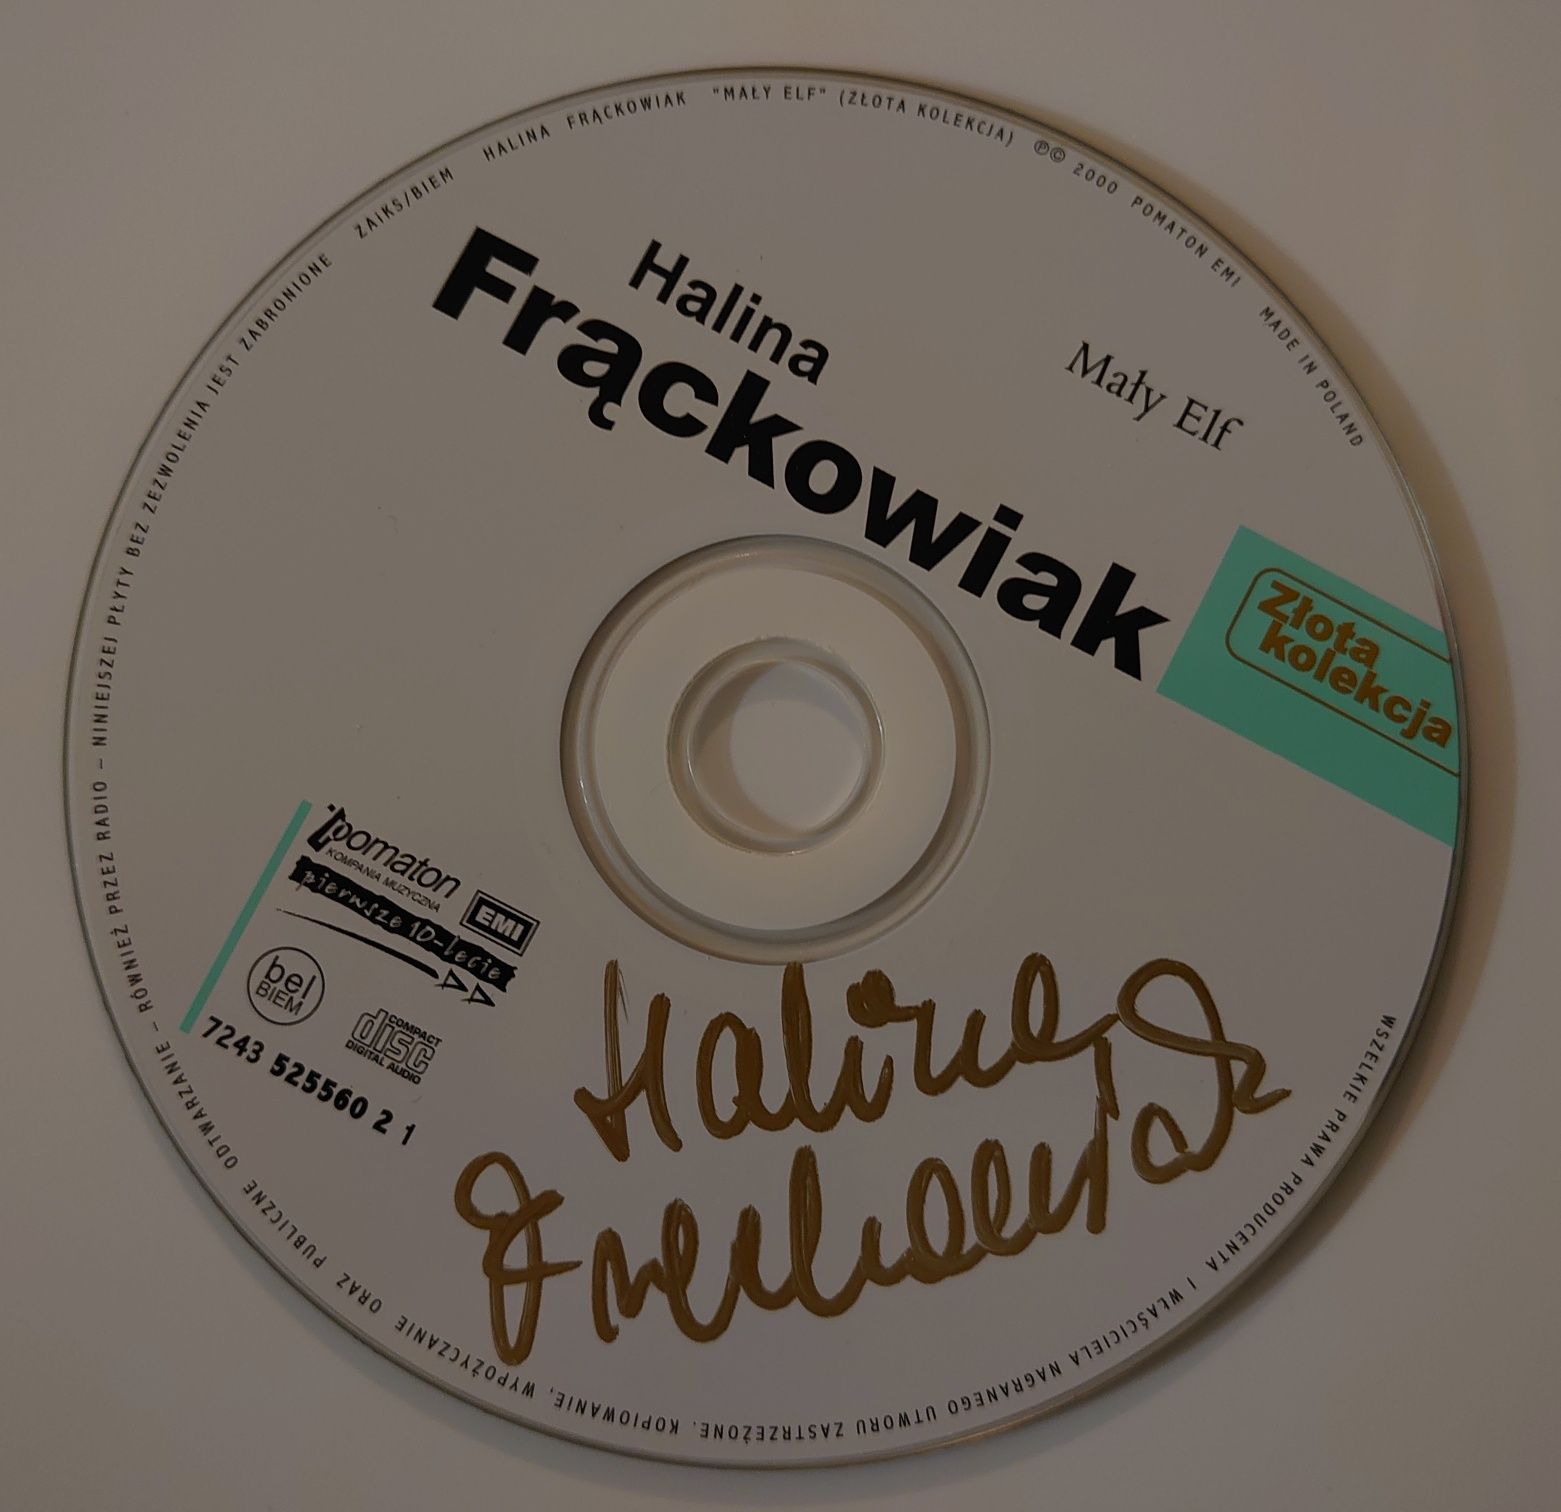 Halina Frąckowiak - płyta z autografem